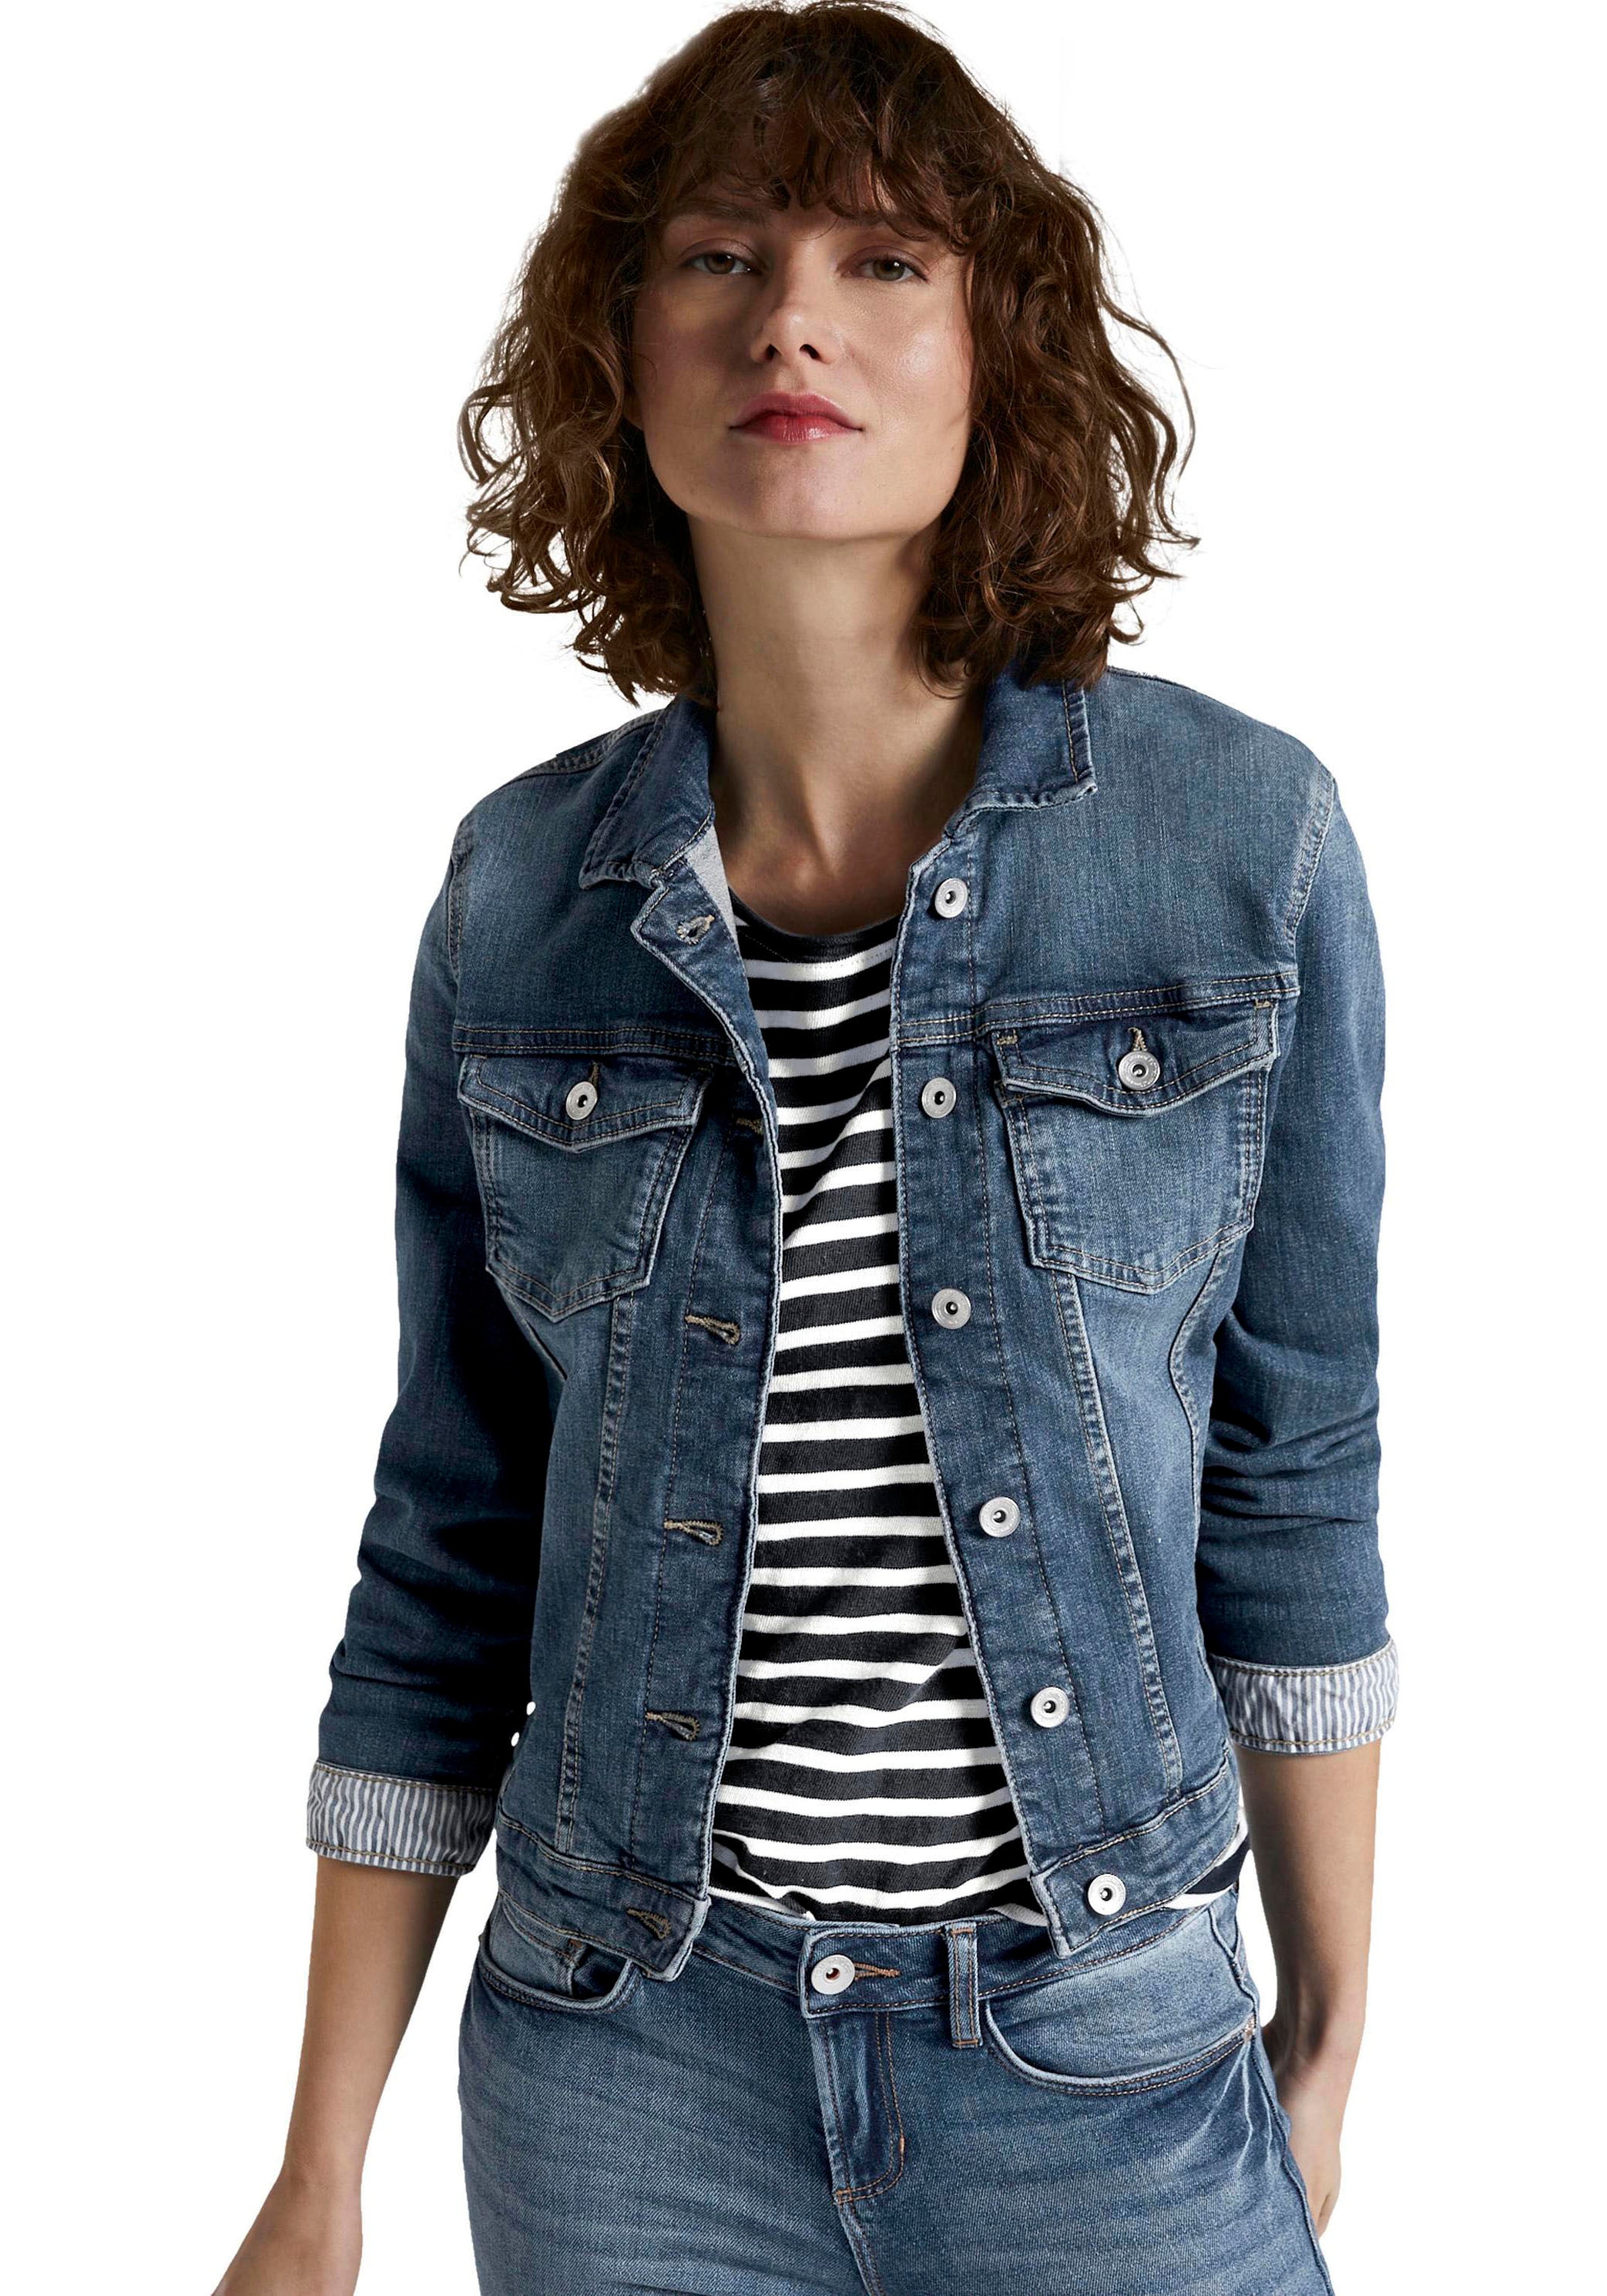 Jeansjacken online kaufen | Jeansjacke für Damen bei Ackermann